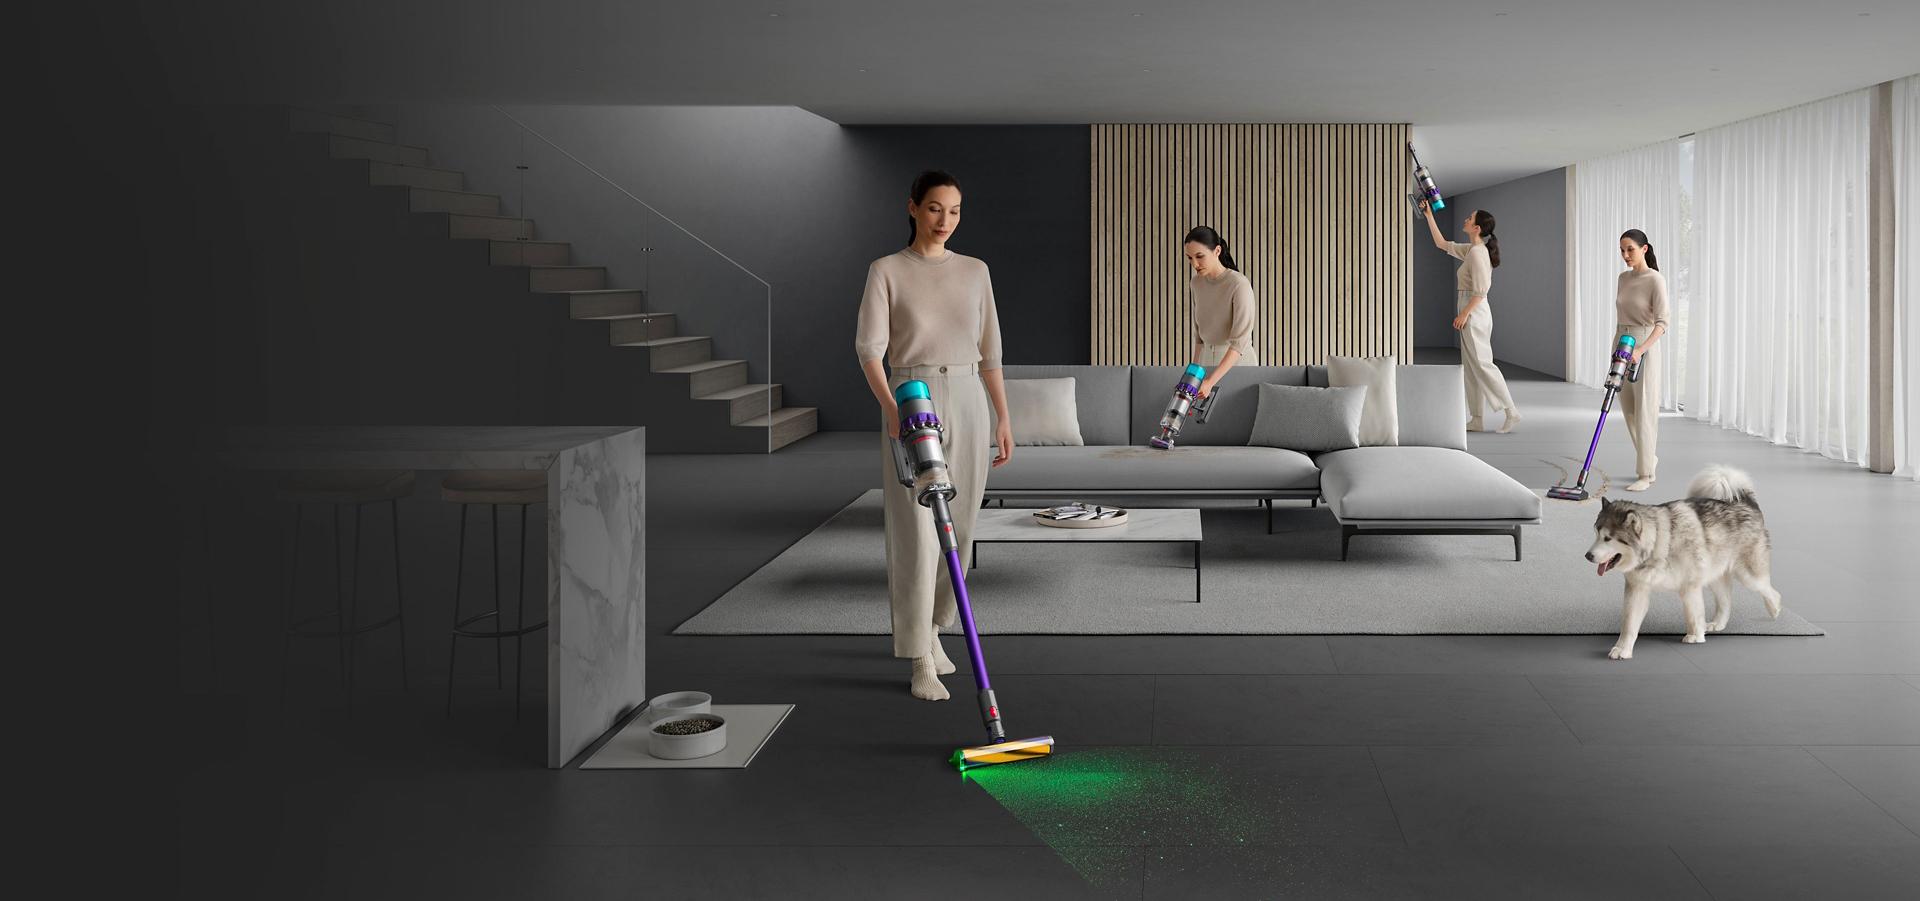 Naine koristamas kogu ruumi, nii kõrgeid kohti, diivaneid, vaipa kui ka kõvakattega põrandat.